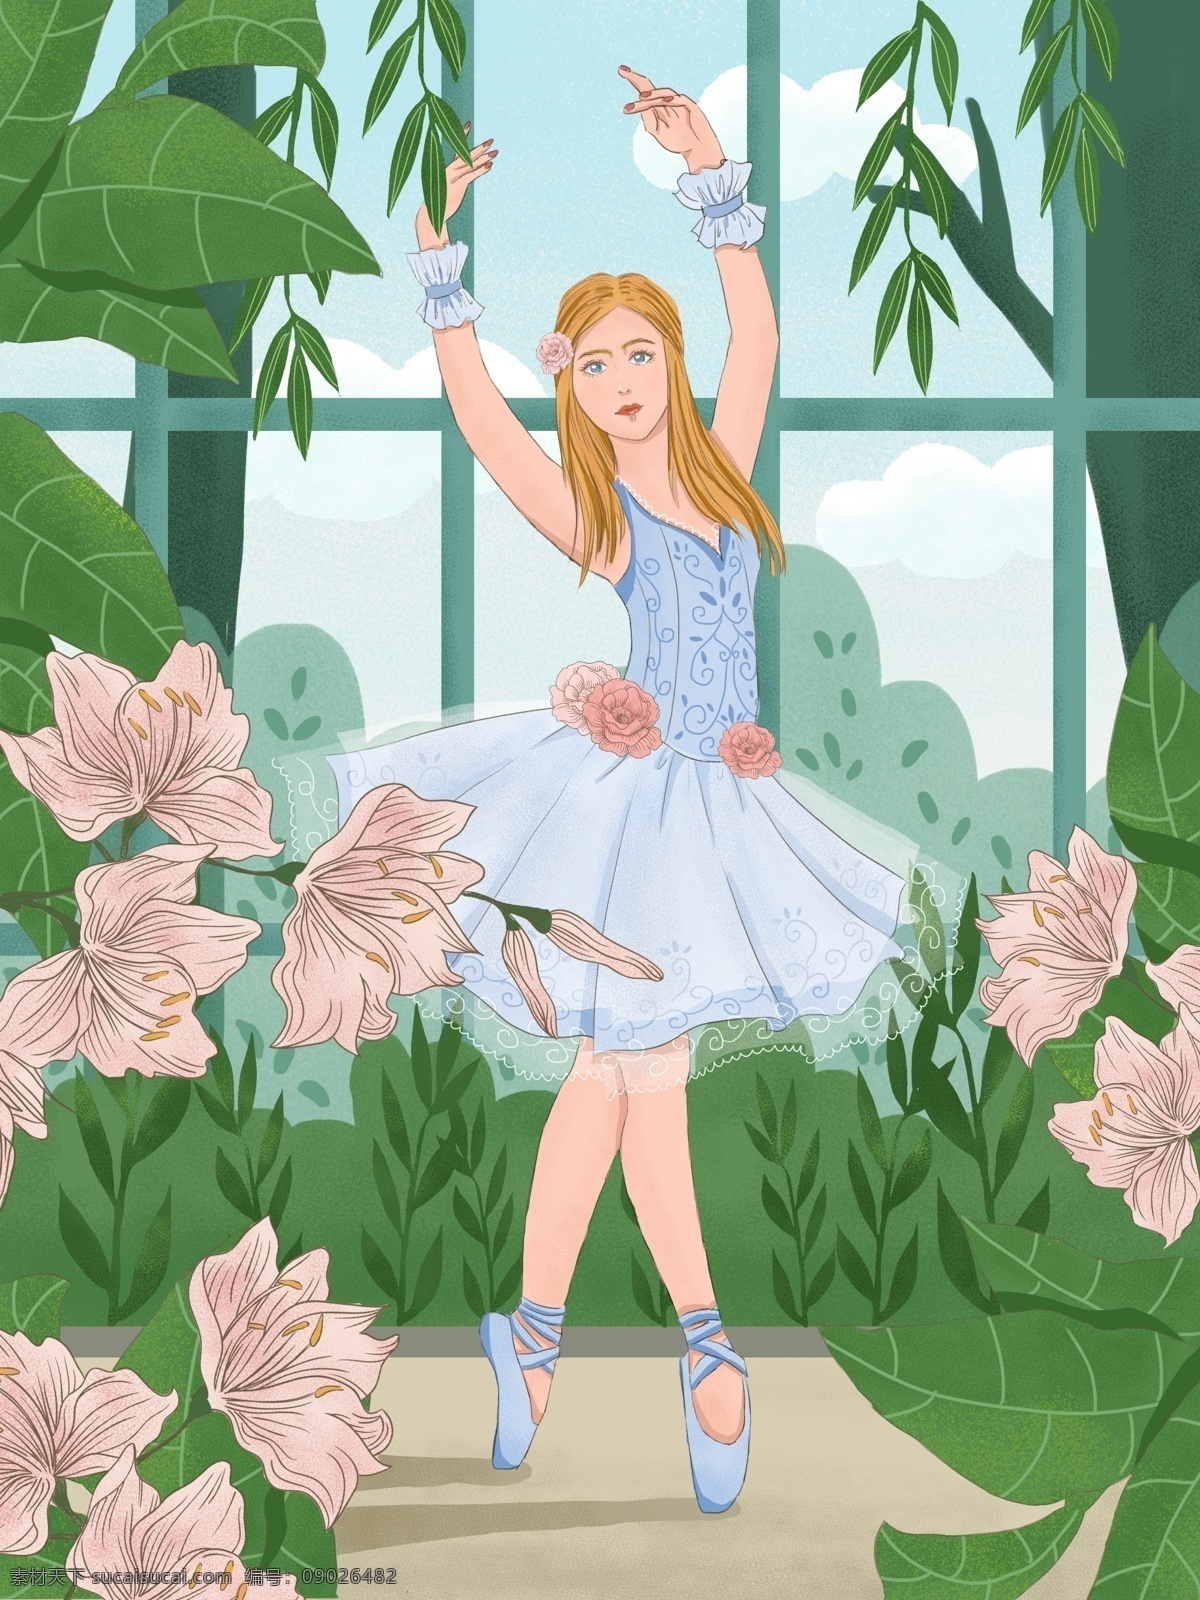 窗前 跳 芭蕾舞 女孩 手绘 插画 绿色 商业 运动 蓝色 舞蹈 小清新 写实 细腻 百合花 肌理